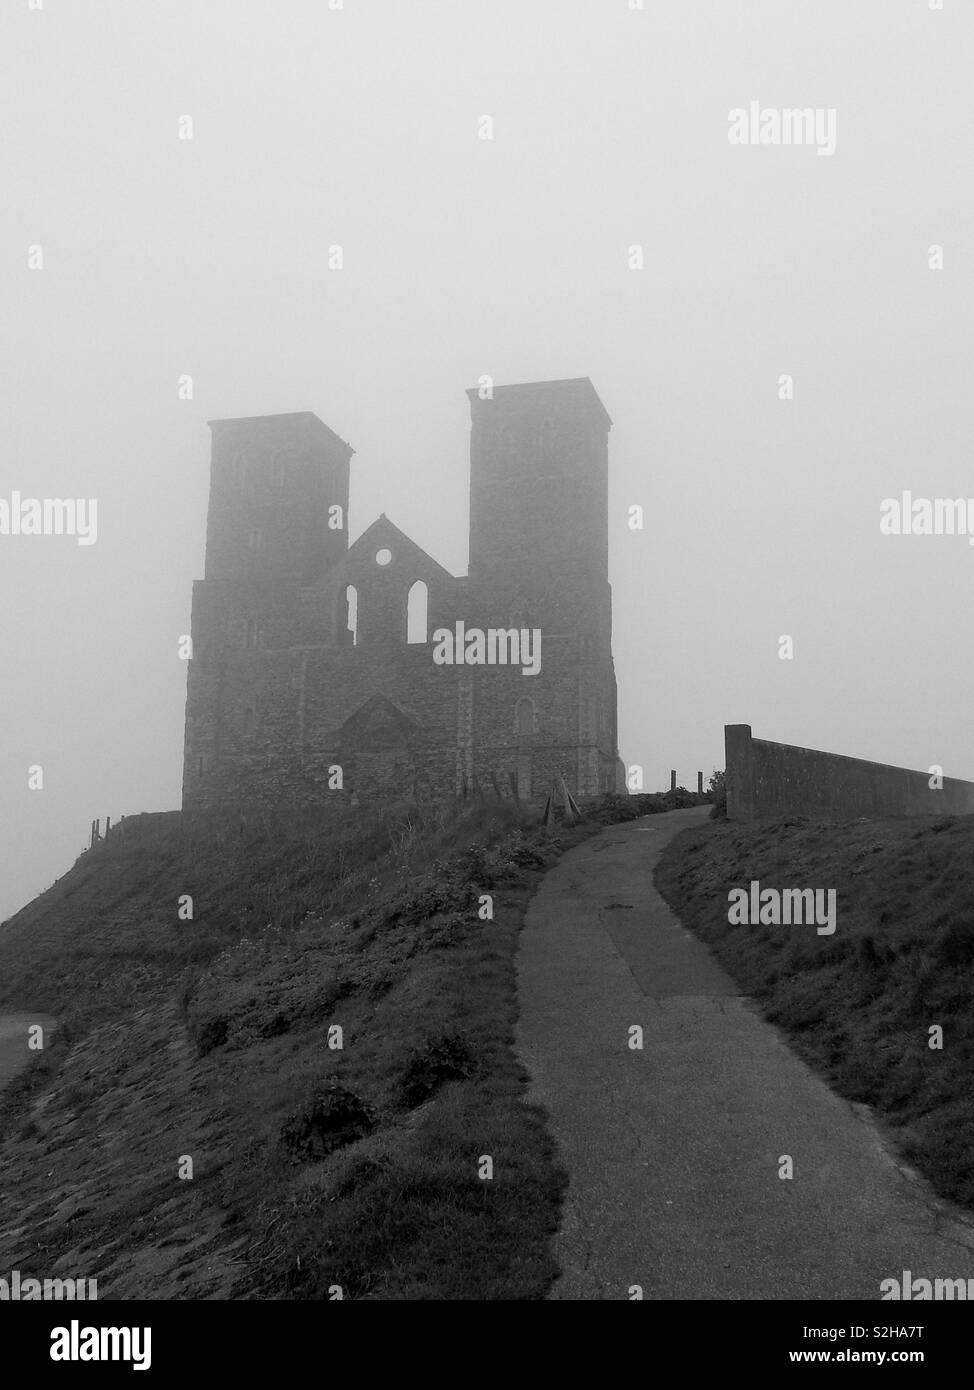 Una suggestiva vista del famoso punto di riferimento e le torri gemelle di rovine della chiesa Reculver, Kent, incombente in un mare di nebbia. Foto Stock